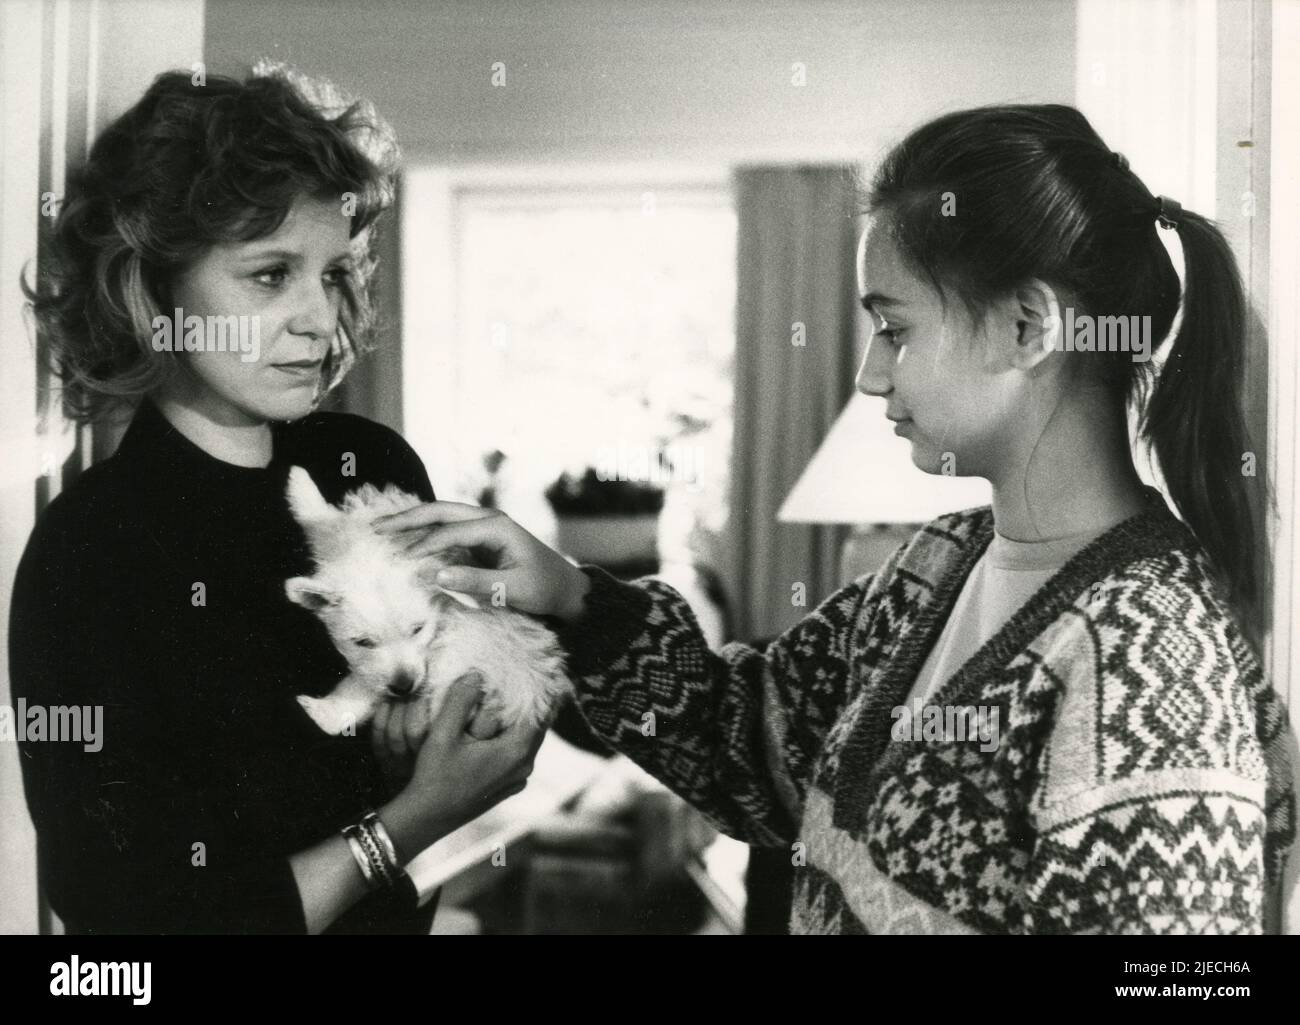 Las actrices Radost Bokel y Ulrike Kriener en la película Schuldig, Alemania 1989 Foto de stock